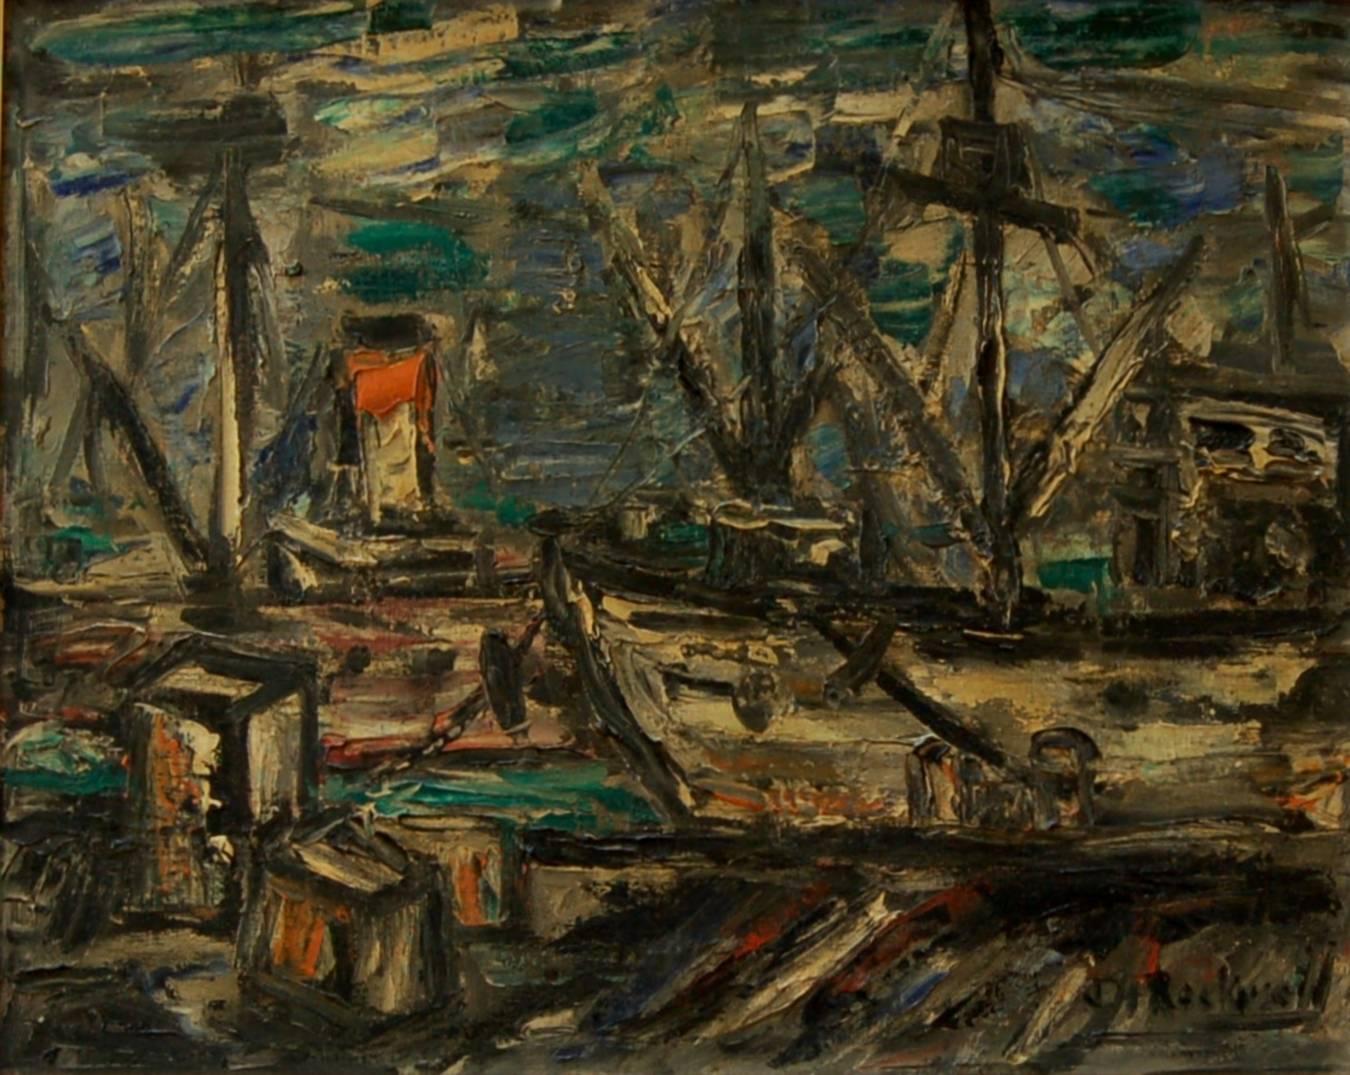 Dock de transport de marchandises - Painting de John Rockwell